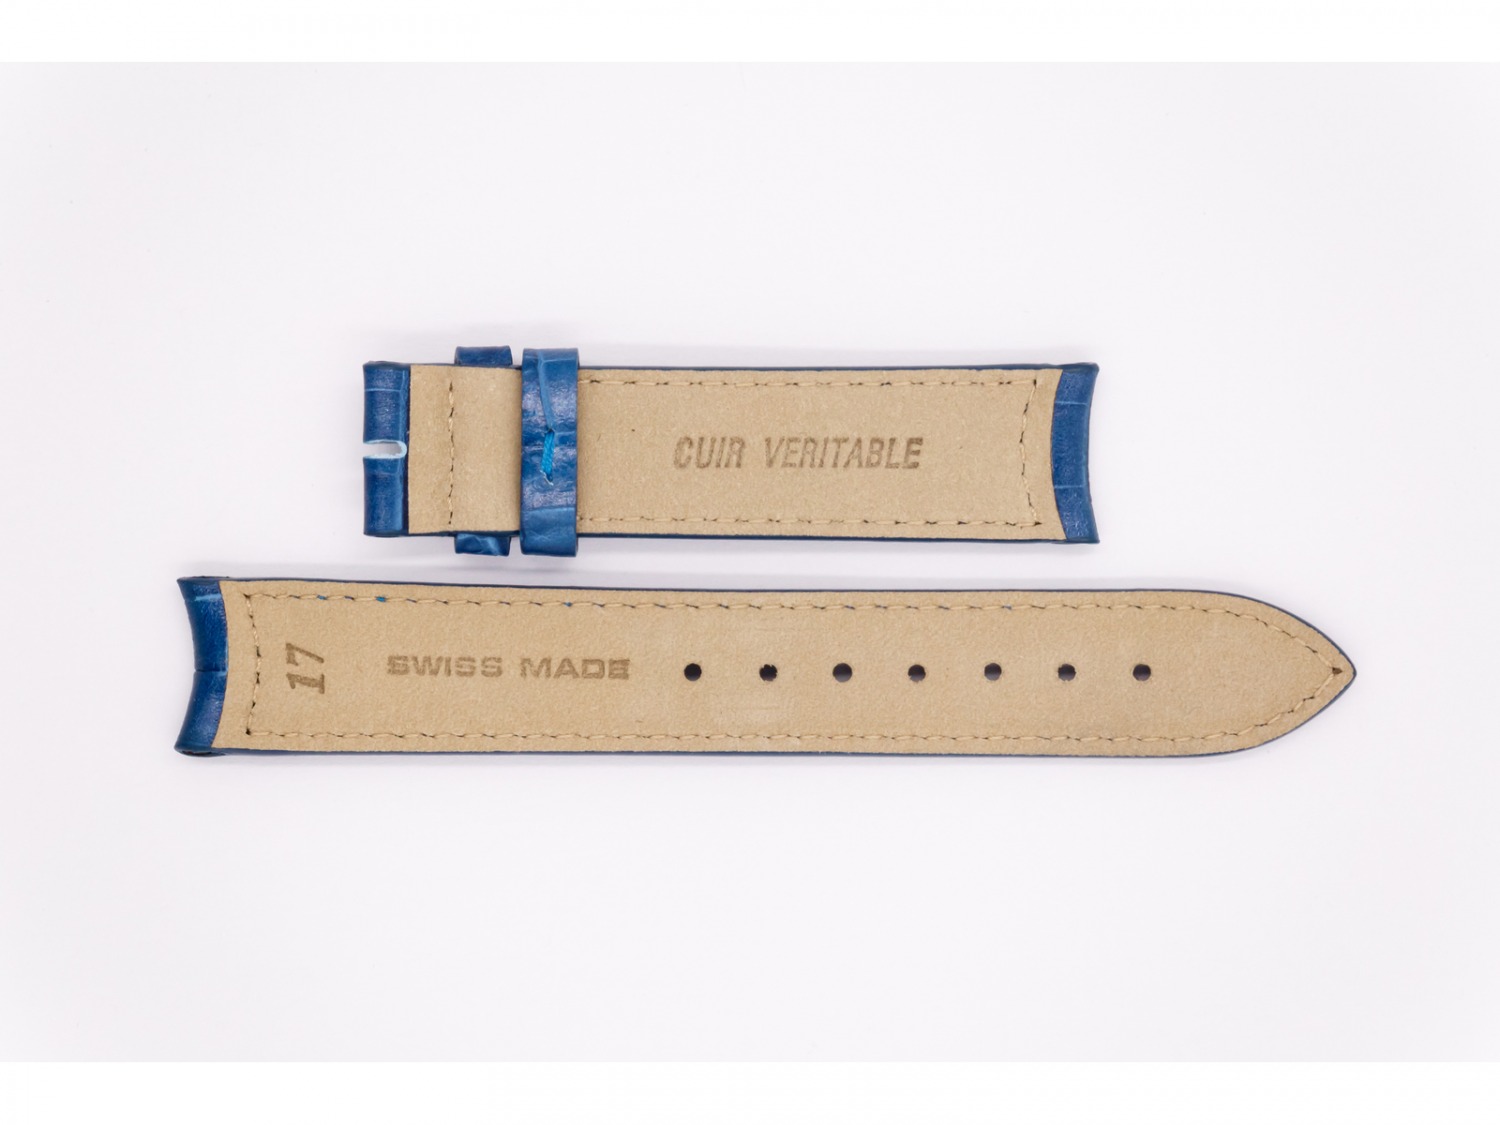 Leather Aerowatch strap, dark (navy) blue